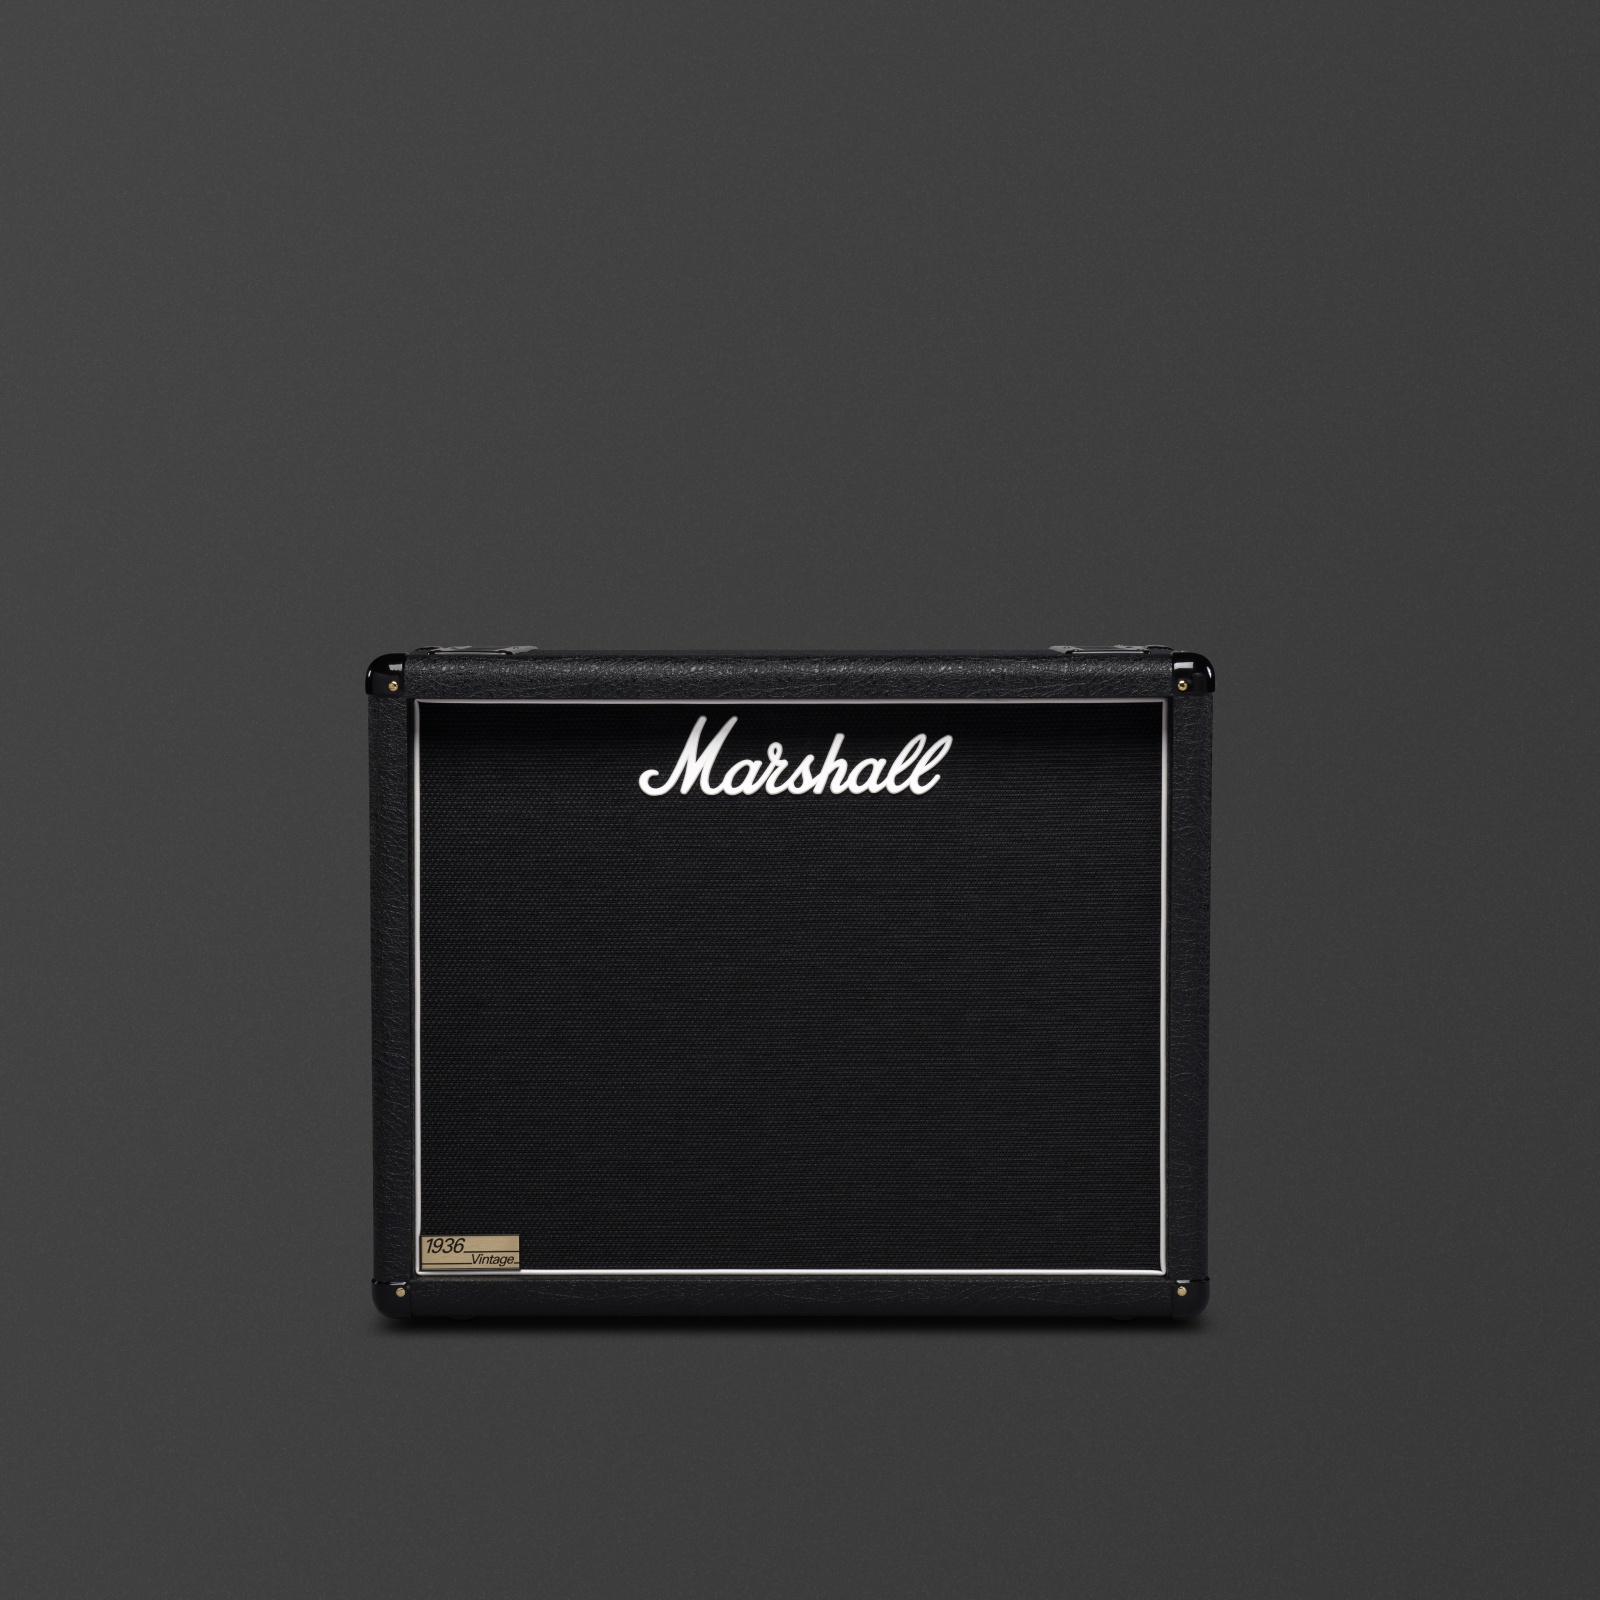 2x12" black vintage-inspired speaker cabinet